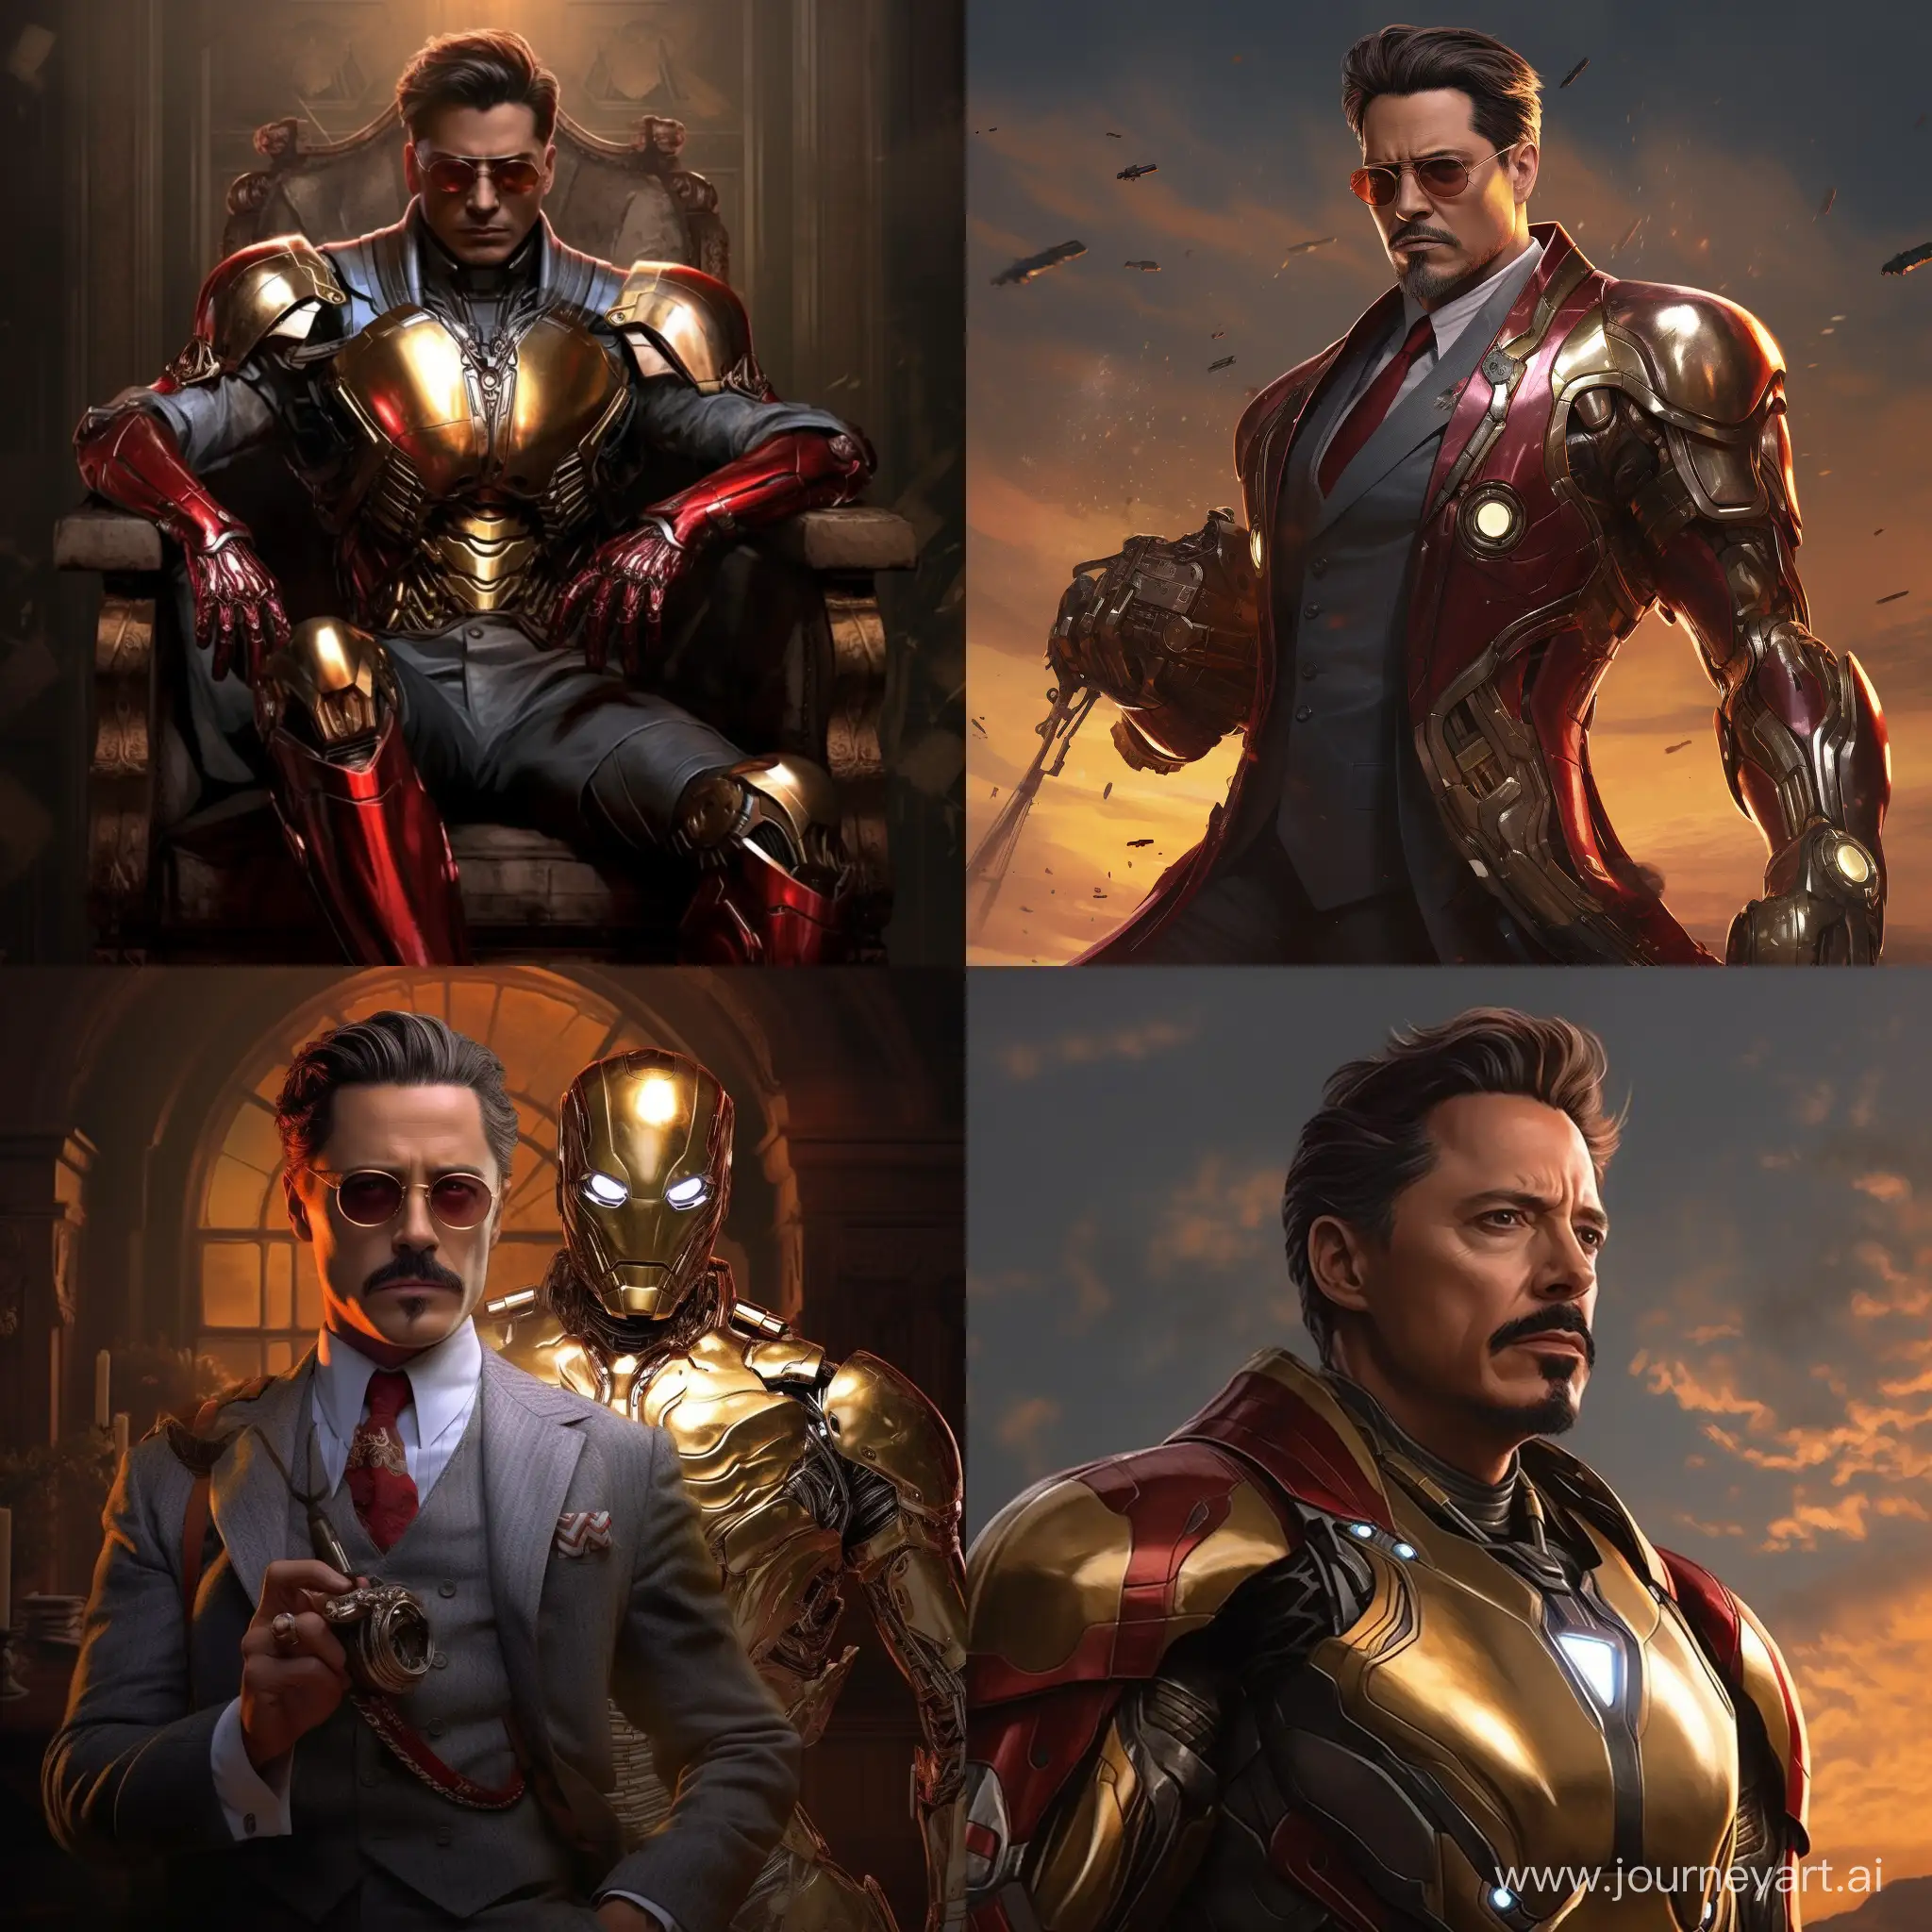 Johnny-Depp-as-Iron-Man-Captivating-Marvel-Transformation